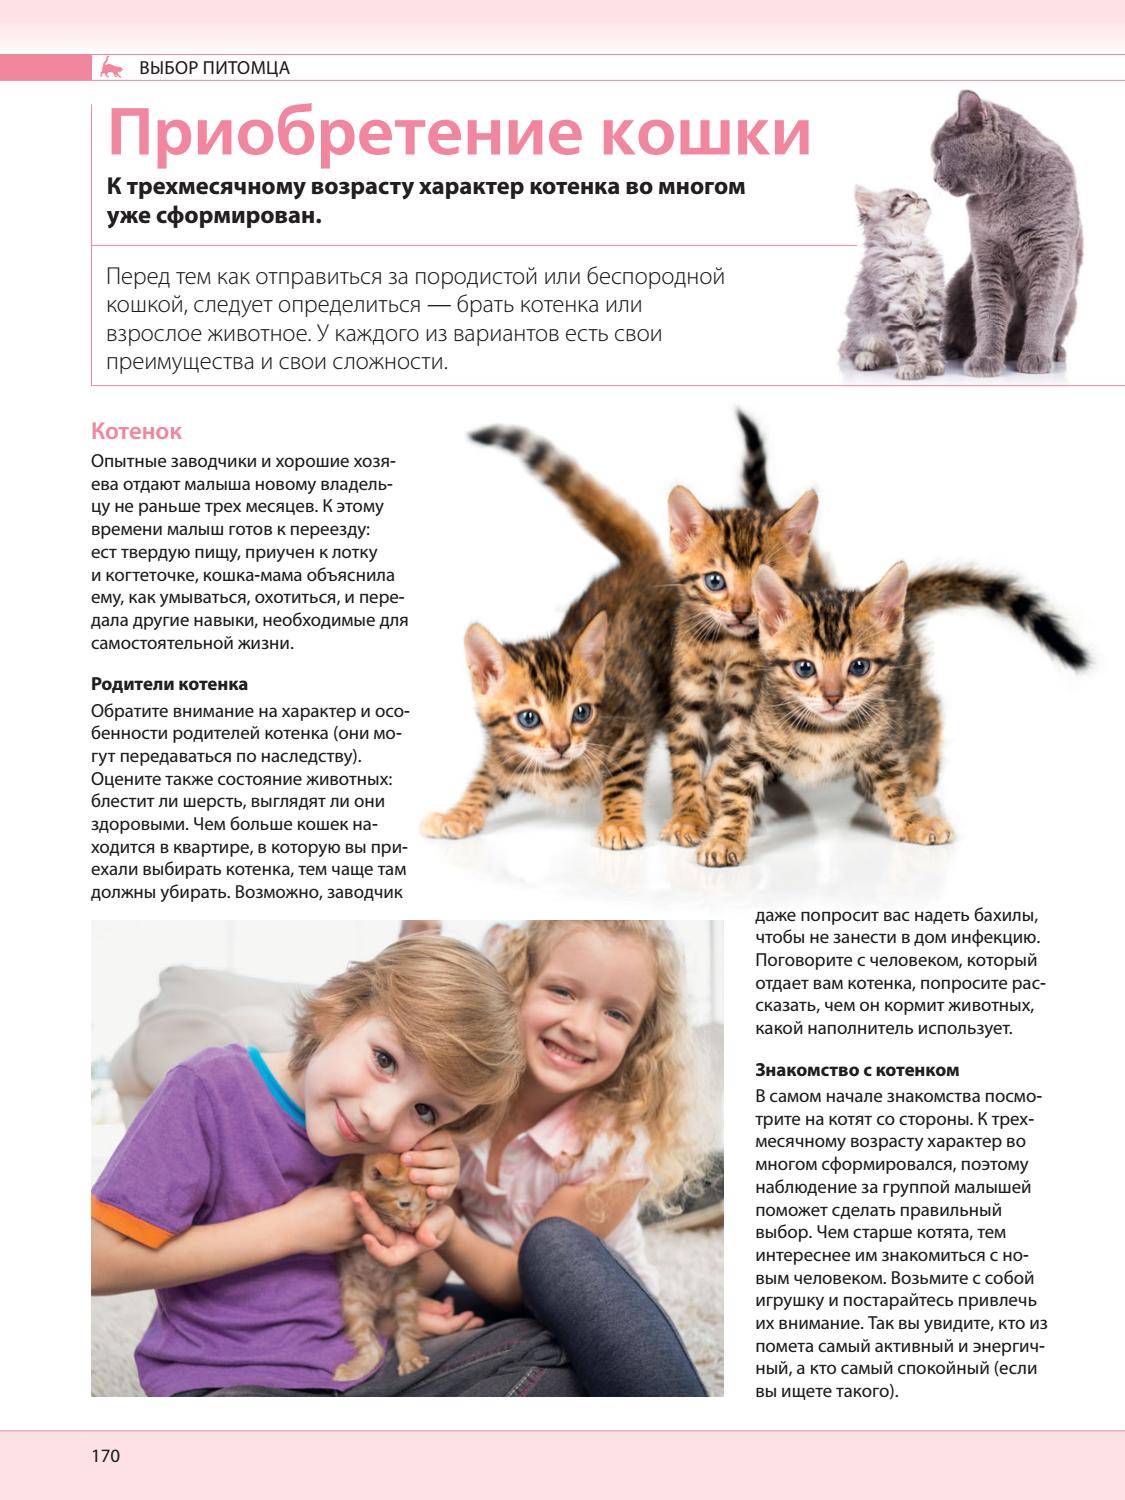 Тайские кошки: описание породы, варианты окраса и особенности содержания